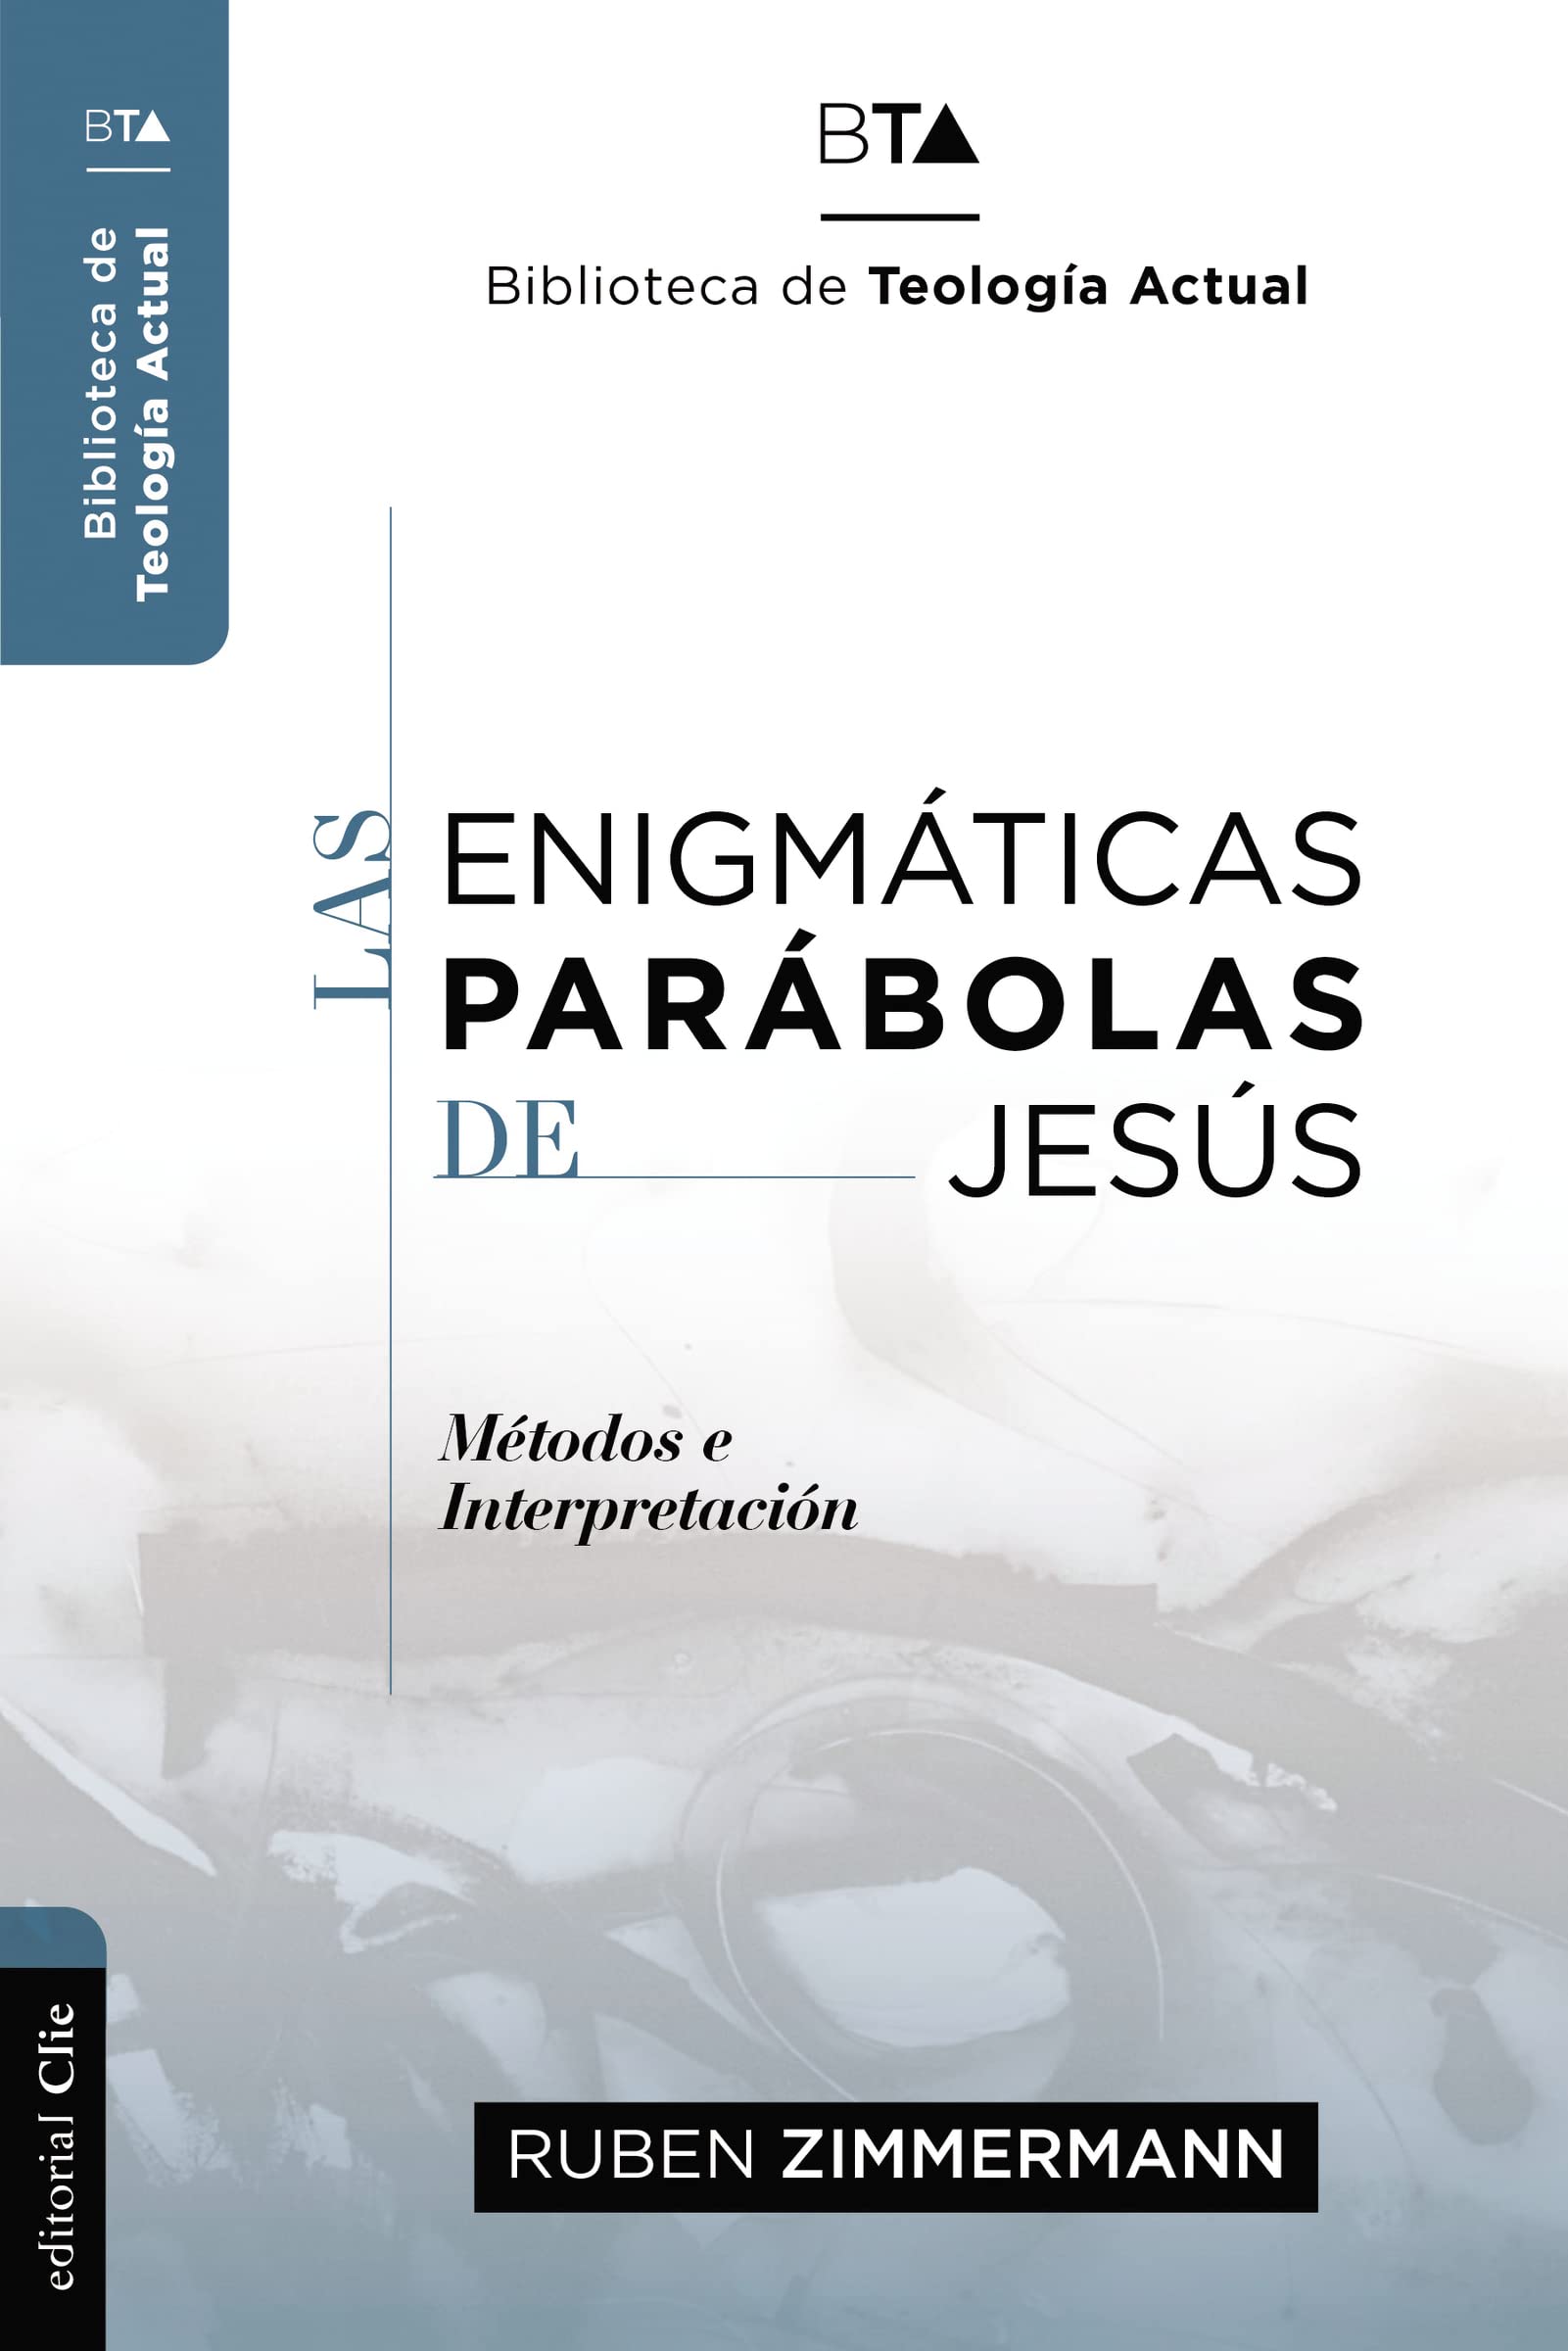 Las Enigmáticas parabolas de jesus